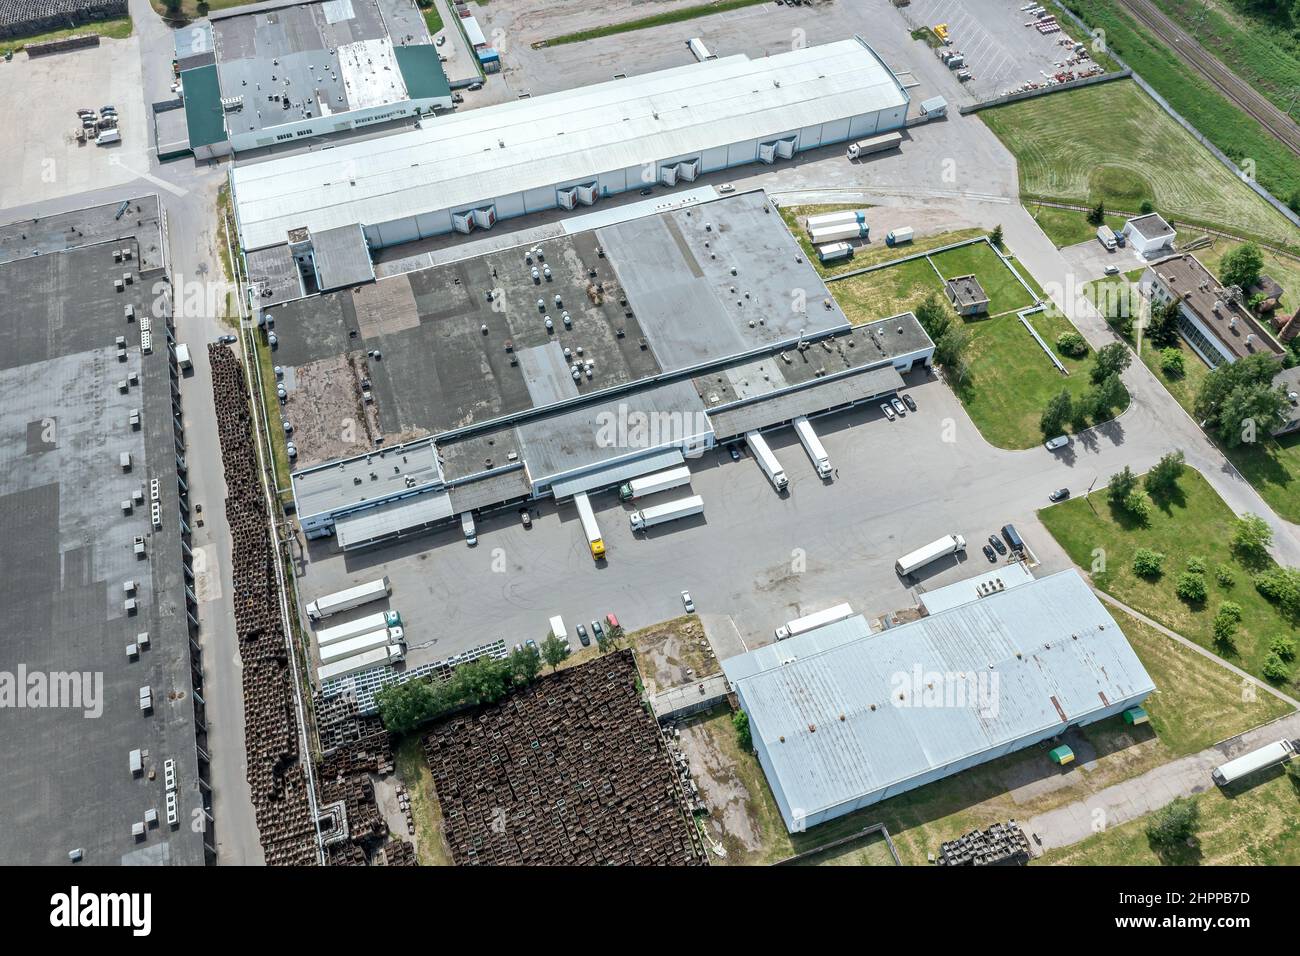 vista aerea del centro di distribuzione nella zona industriale logistica dei sobborghi. fotografia con droni. Foto Stock